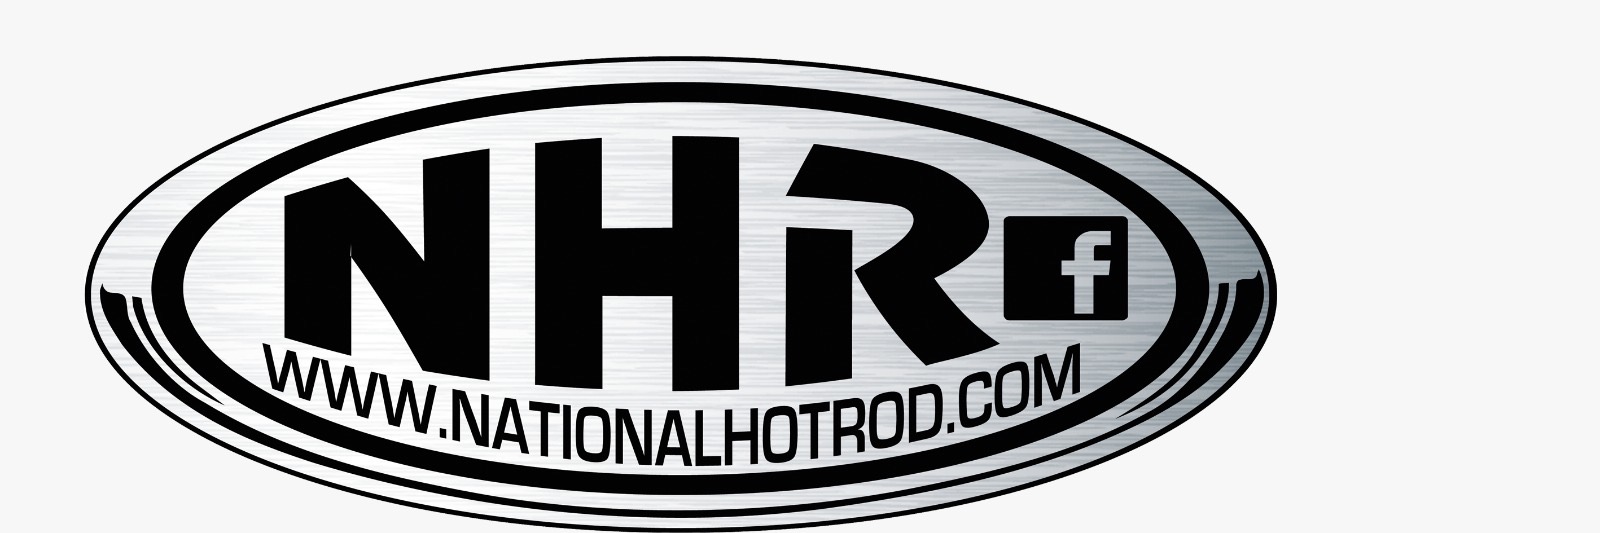 National Hot Rod . Com National Hot Rod . com